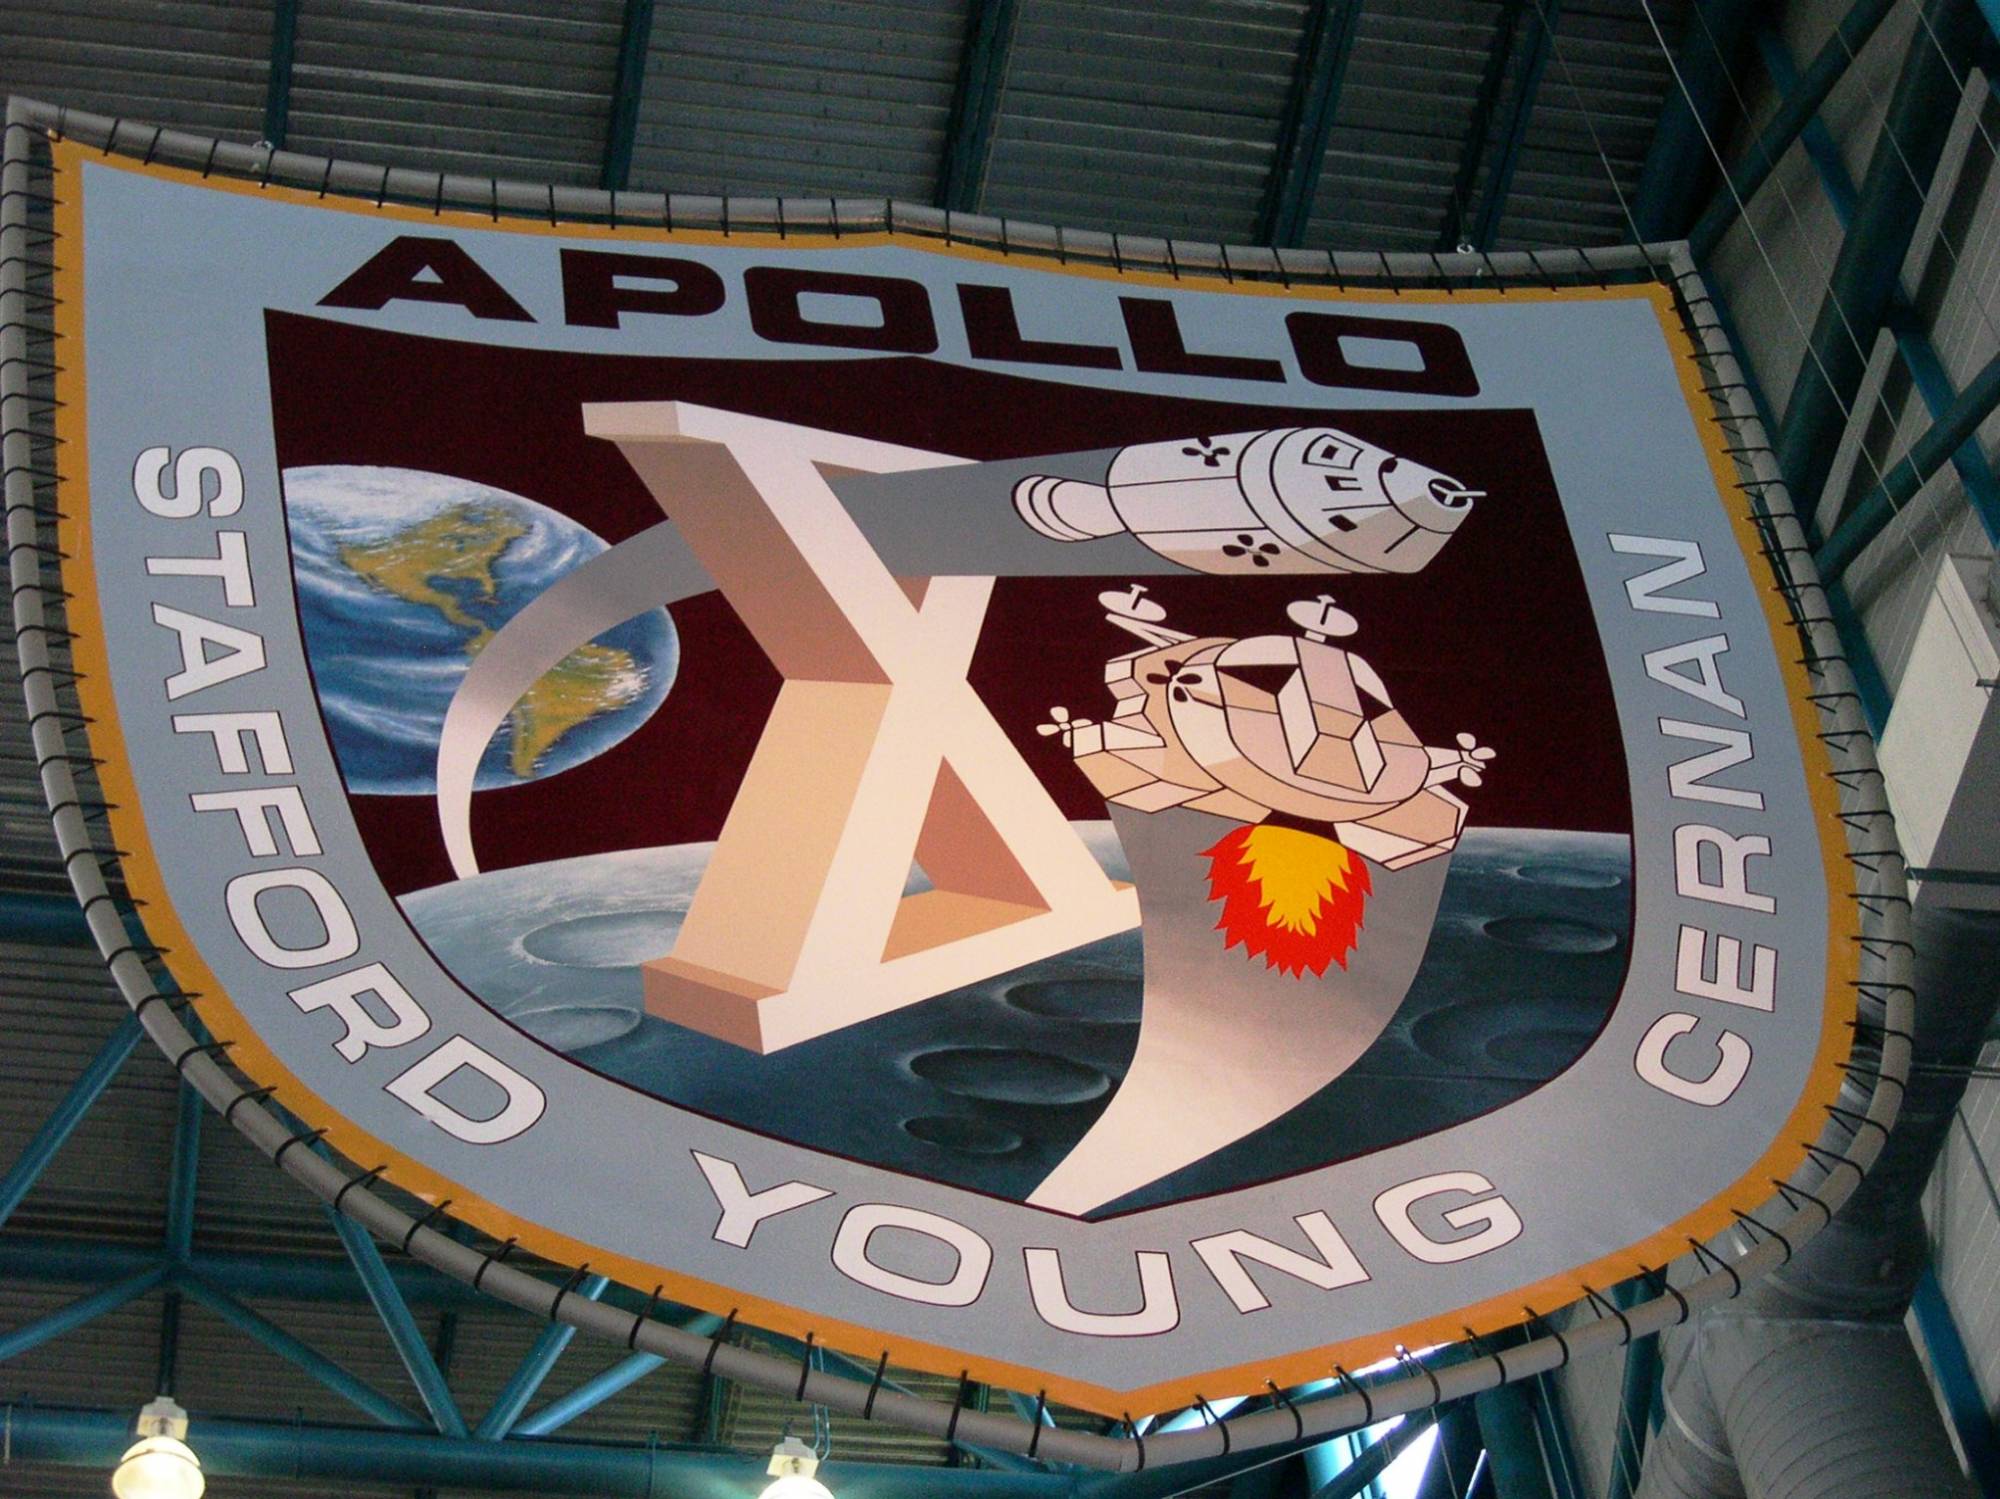 KSC - Apollo X Patch at Apollo Saturn V Center